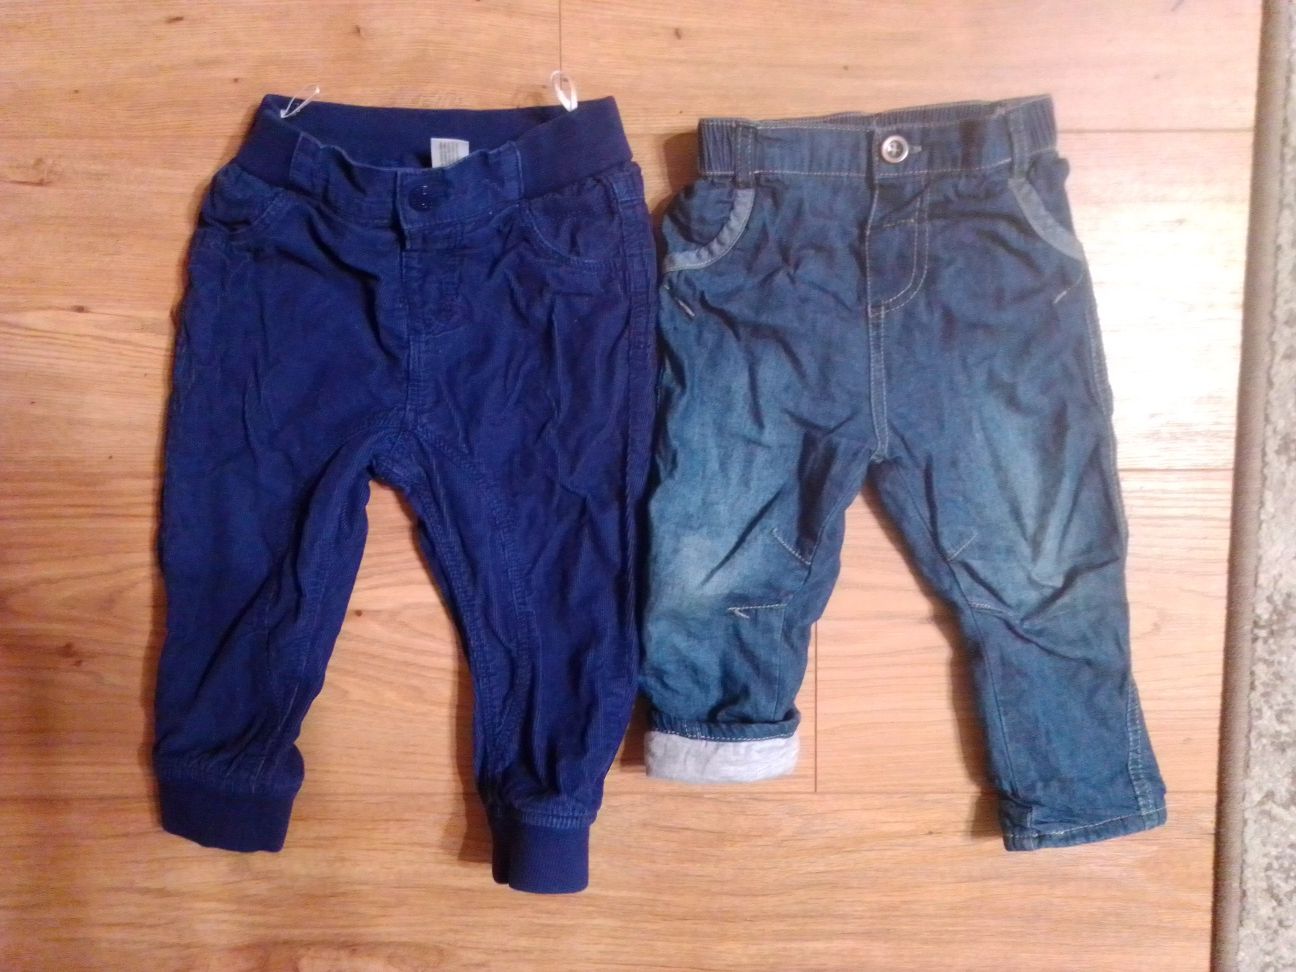 Spodnie ocieplane dla chłopca C&A jeansy i sztruksy 86